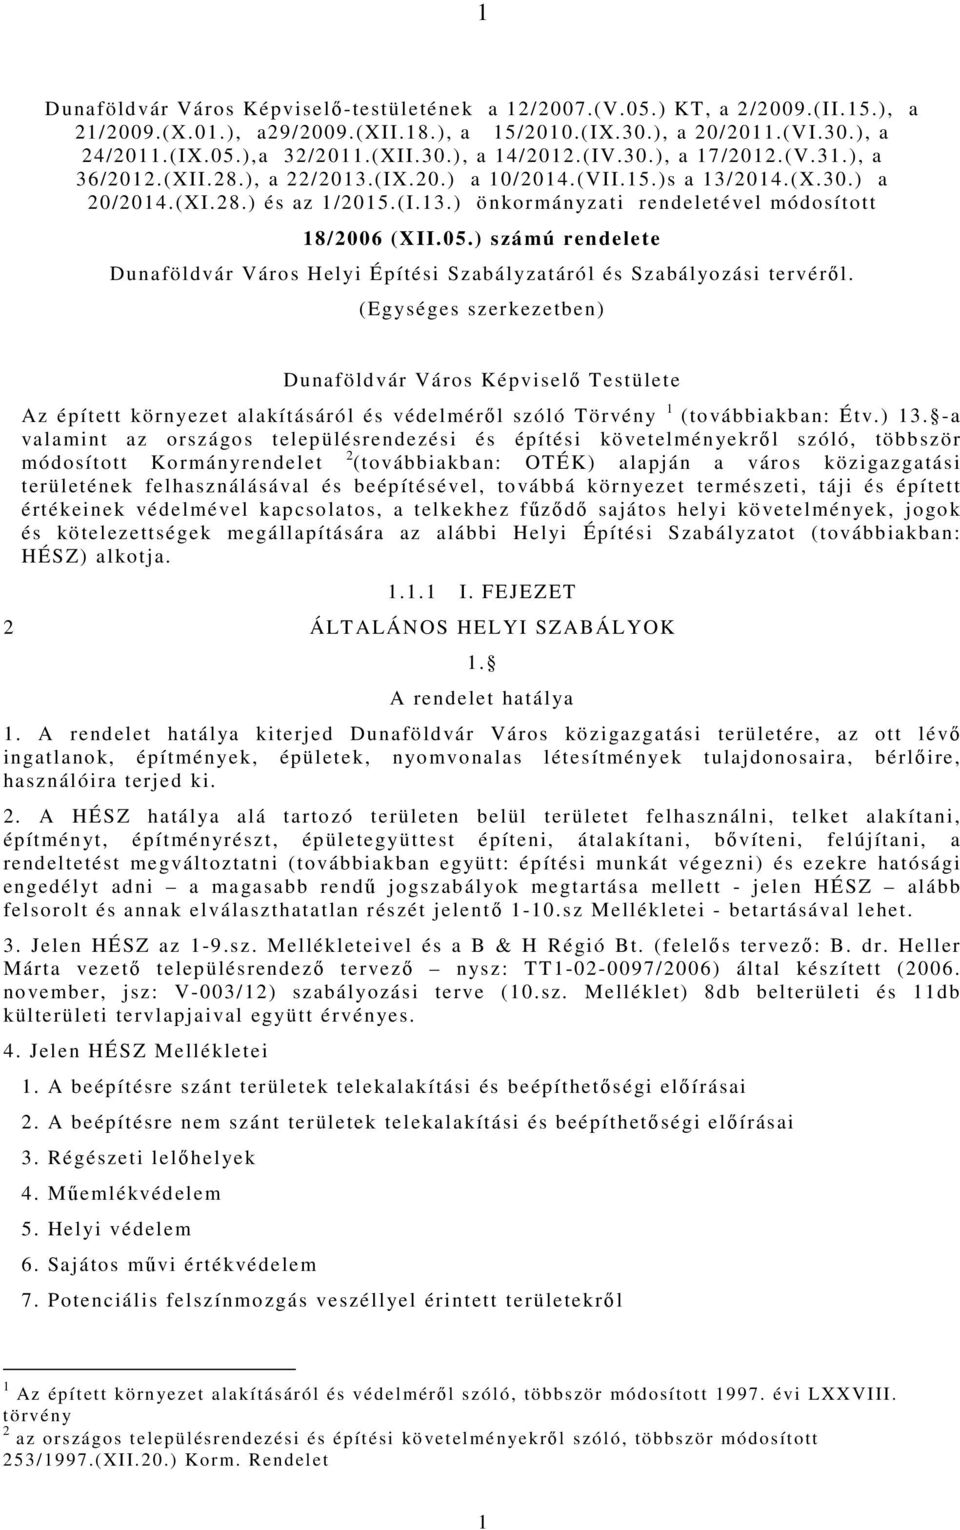 05.) számú rendelete Dunaföldvár Város Helyi Építési Szabályzatáról és Szabályozási tervéről.